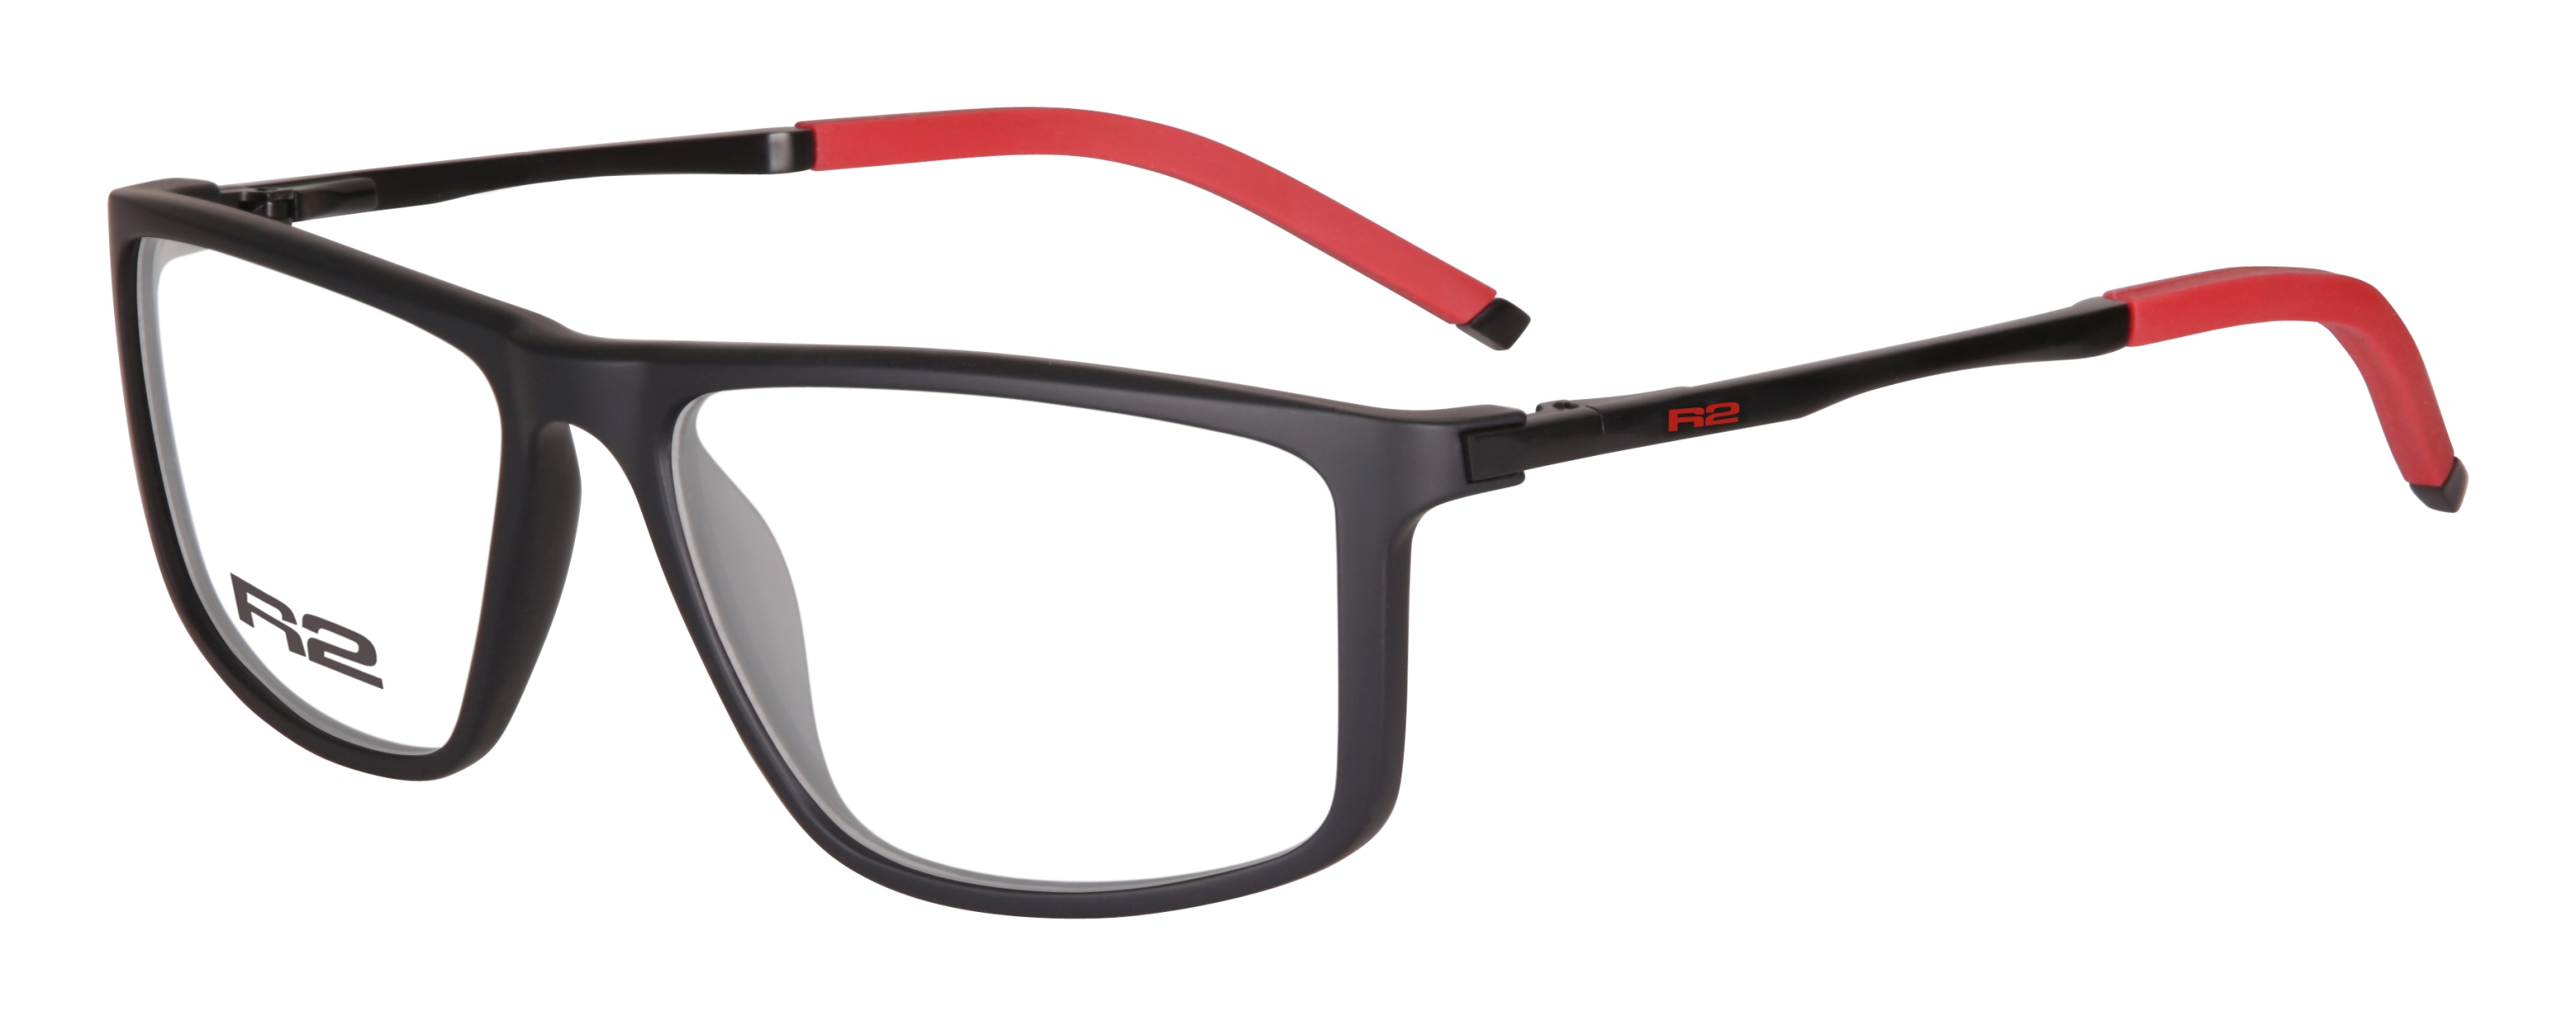 Sportovní dioptrické brýle R2 CROSS MAT105C1 - standard